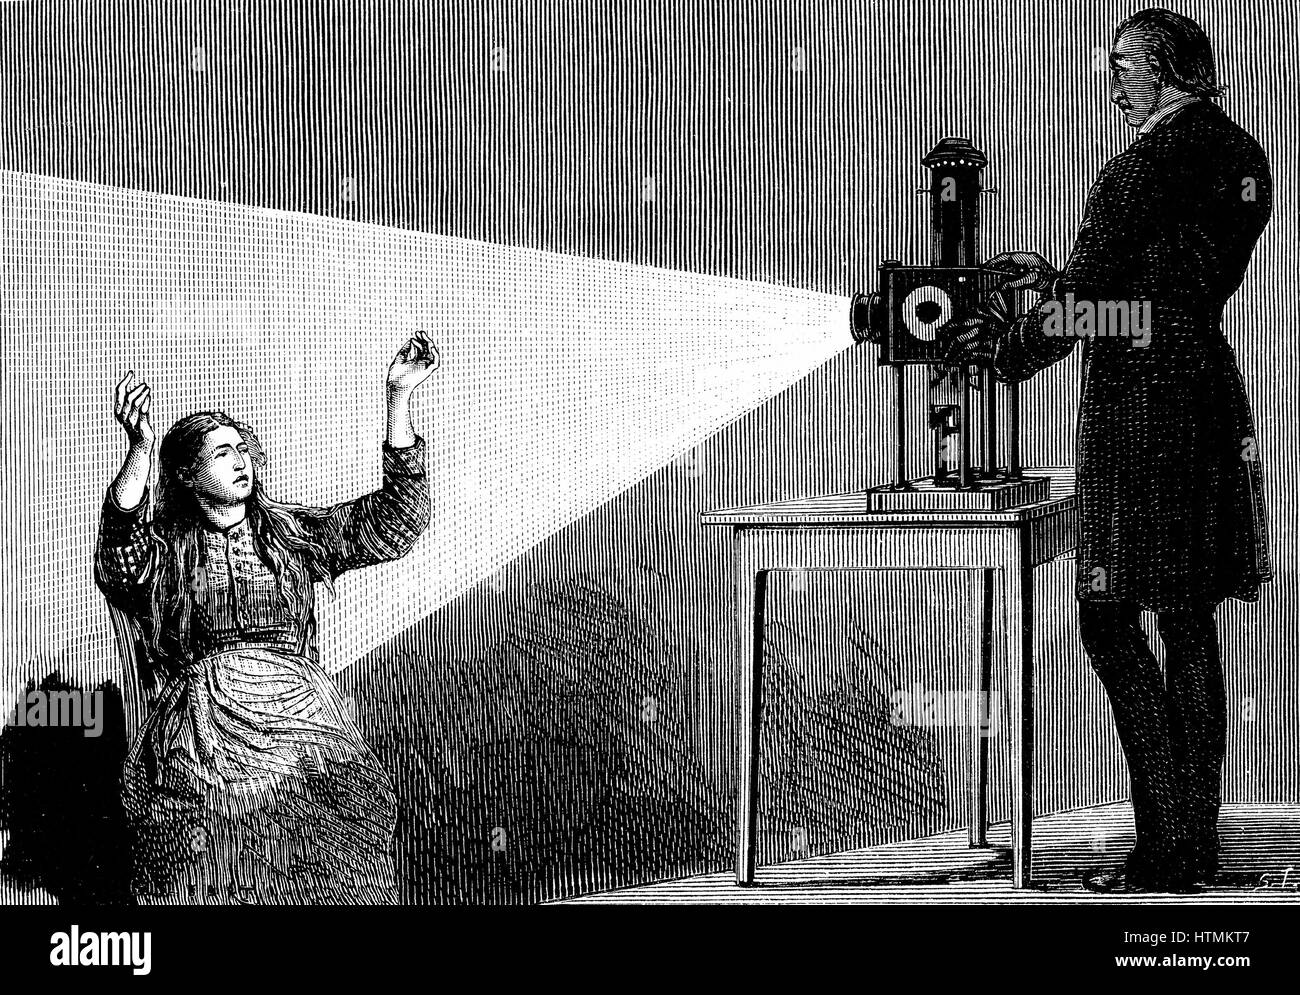 Jean Martin CHARCOT (1825-1903), neurologue français et le pathologiste, démonstration de la production de l'hypnose à l'aide de faisceau de lumière d'une lanterne magique. Photo tirée de la vie à l'hôpital Salpetriere, Paris. Freud a entendu de posthypnotic suggestion de Charcot. Gravure tirée de 'La nature', Paris, 1879 Banque D'Images